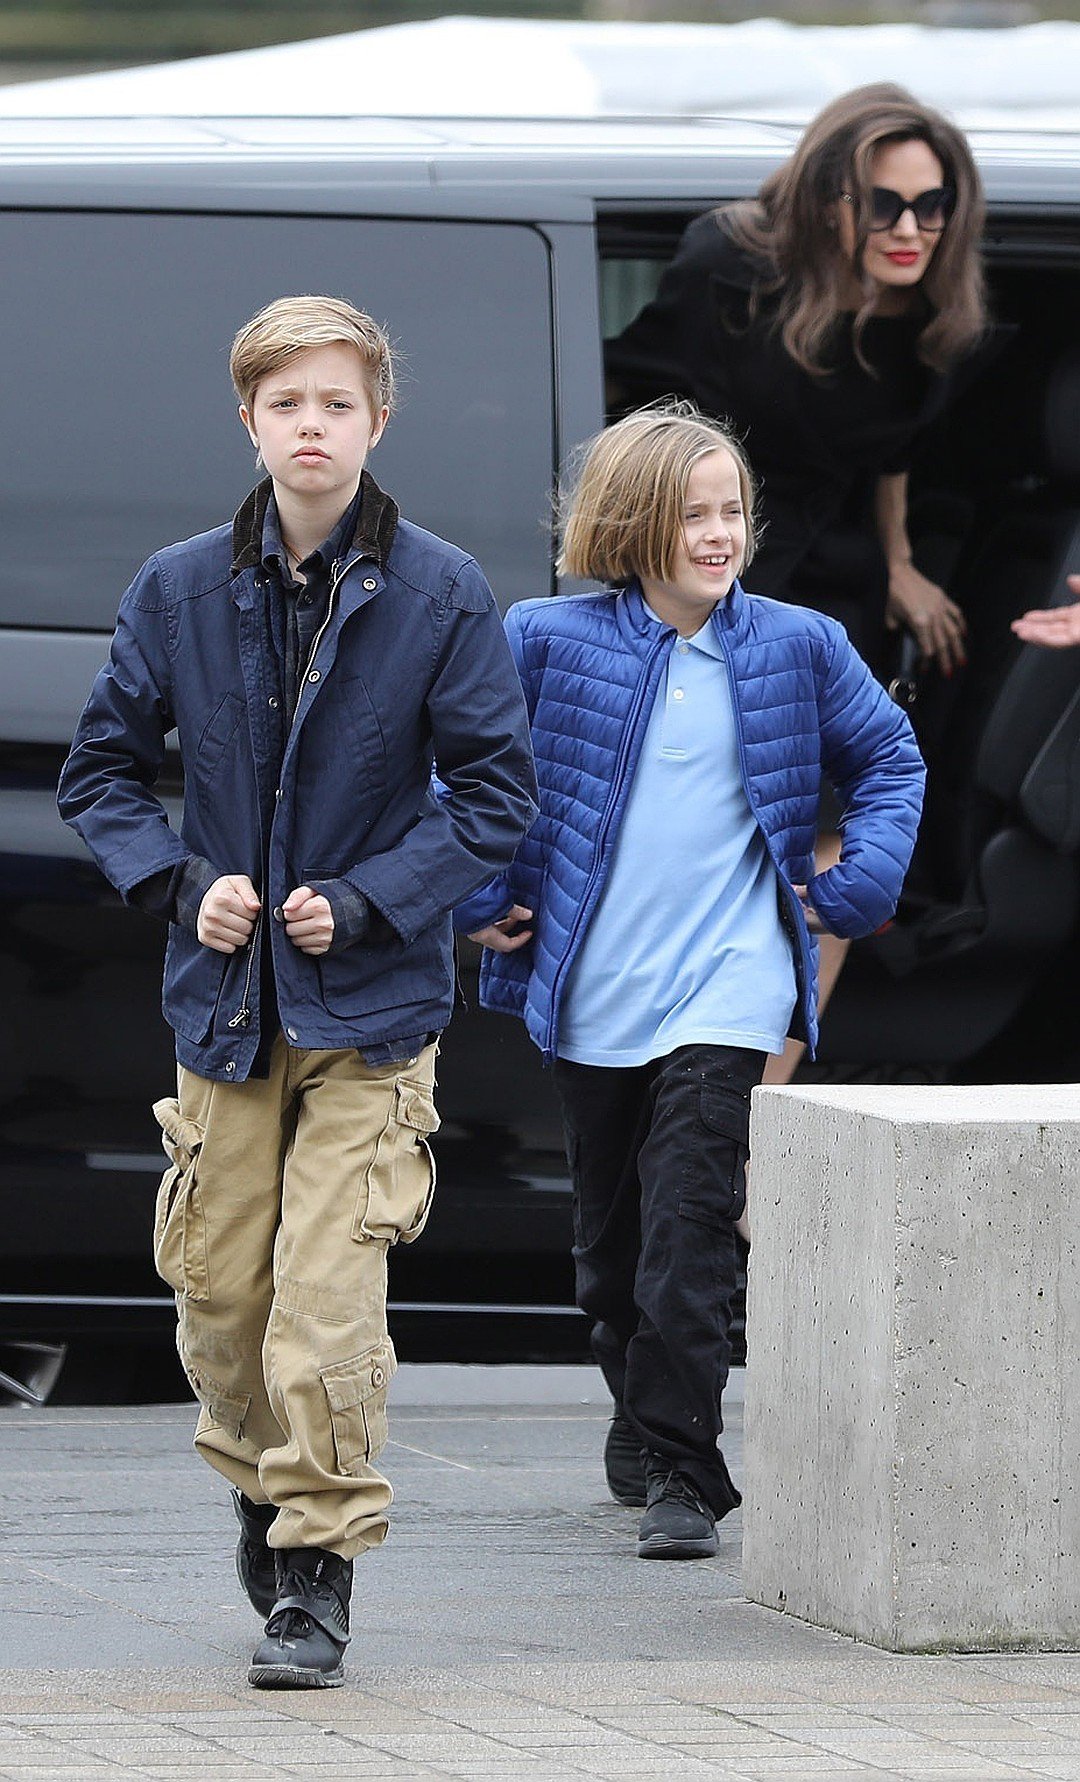 Биологические дочки Джоли и Питта предпочитают мальчиковую одежду и совсем перестали походить на девочек. Фото: EAST NEWS